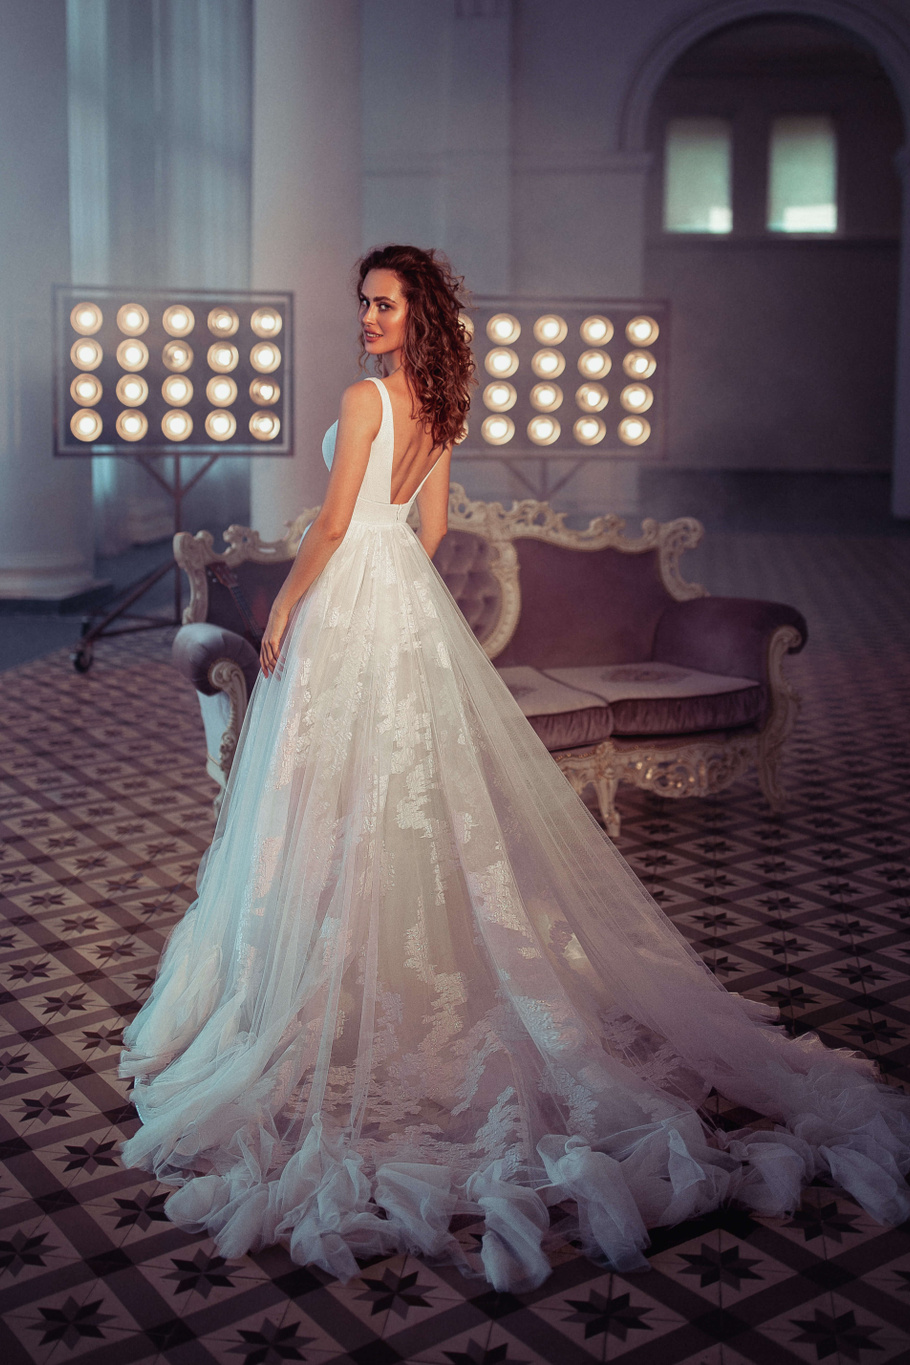 Купить свадебное платье «Лесандра» Бламмо Биамо из коллекции Свит Лайф 2021 года в Нижнем Новгороде